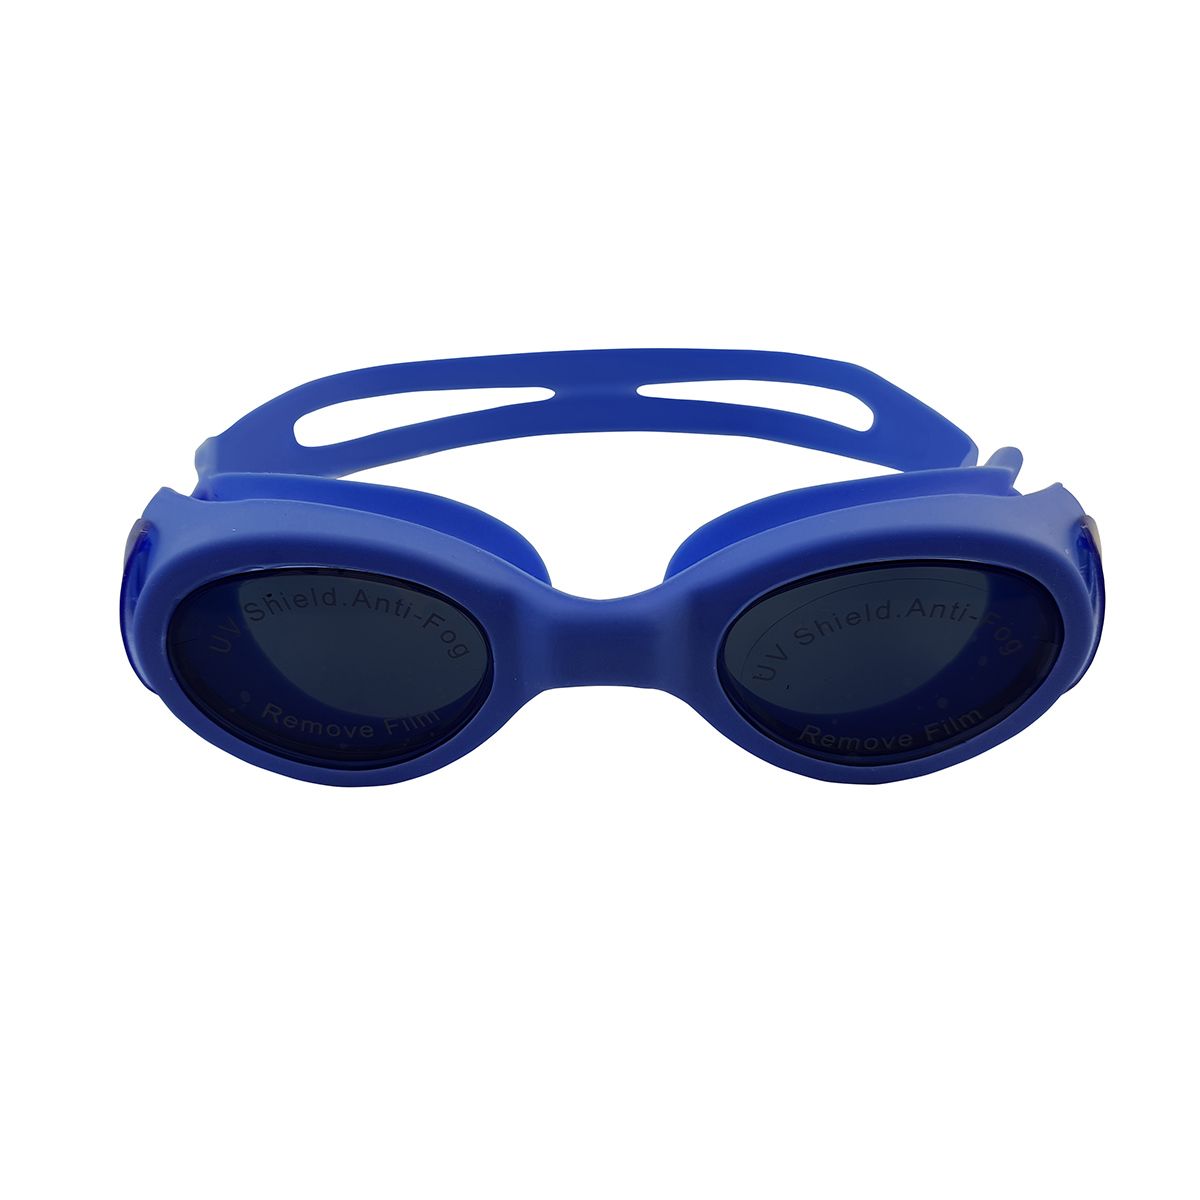  عینک شنا فری شارک مدل MC-502 -  - 10